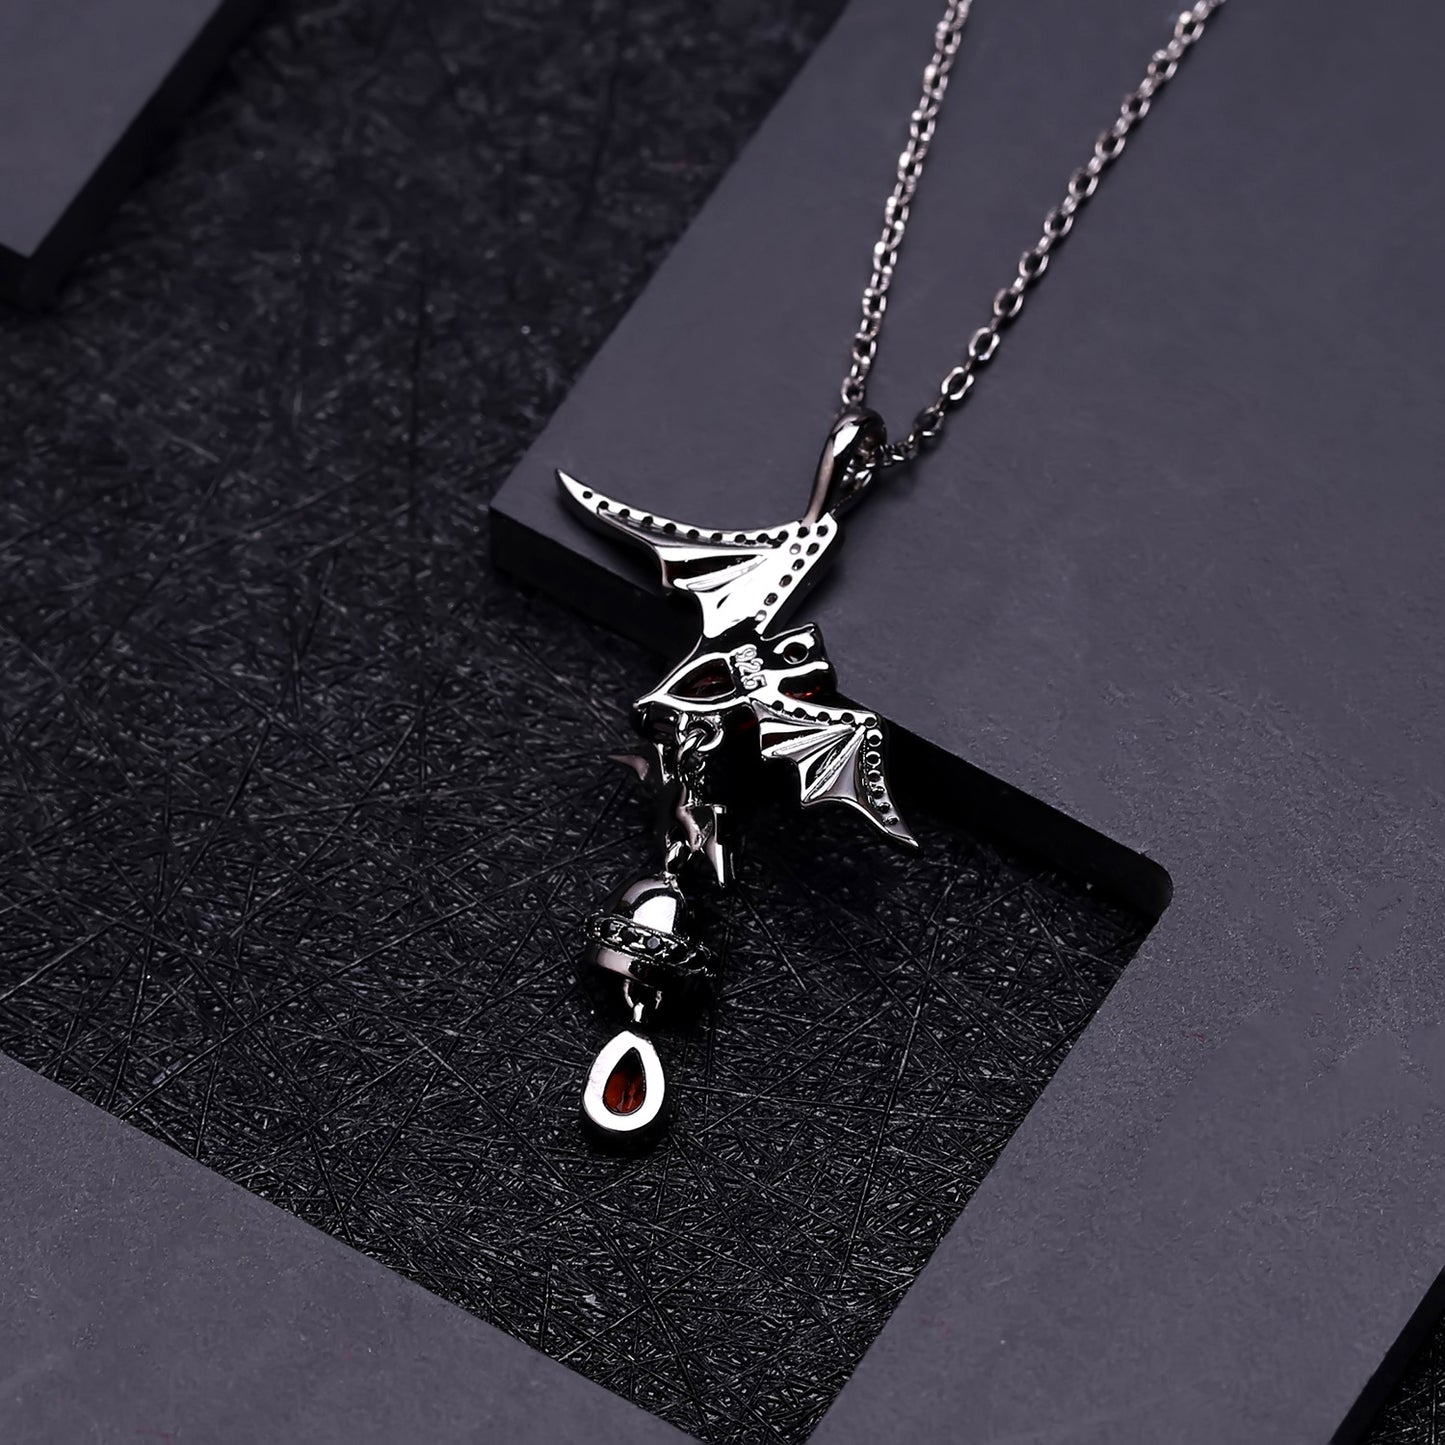 Dark Collection Design Natural Garnet Bat Pendant Sterling Silver Necklace for Women